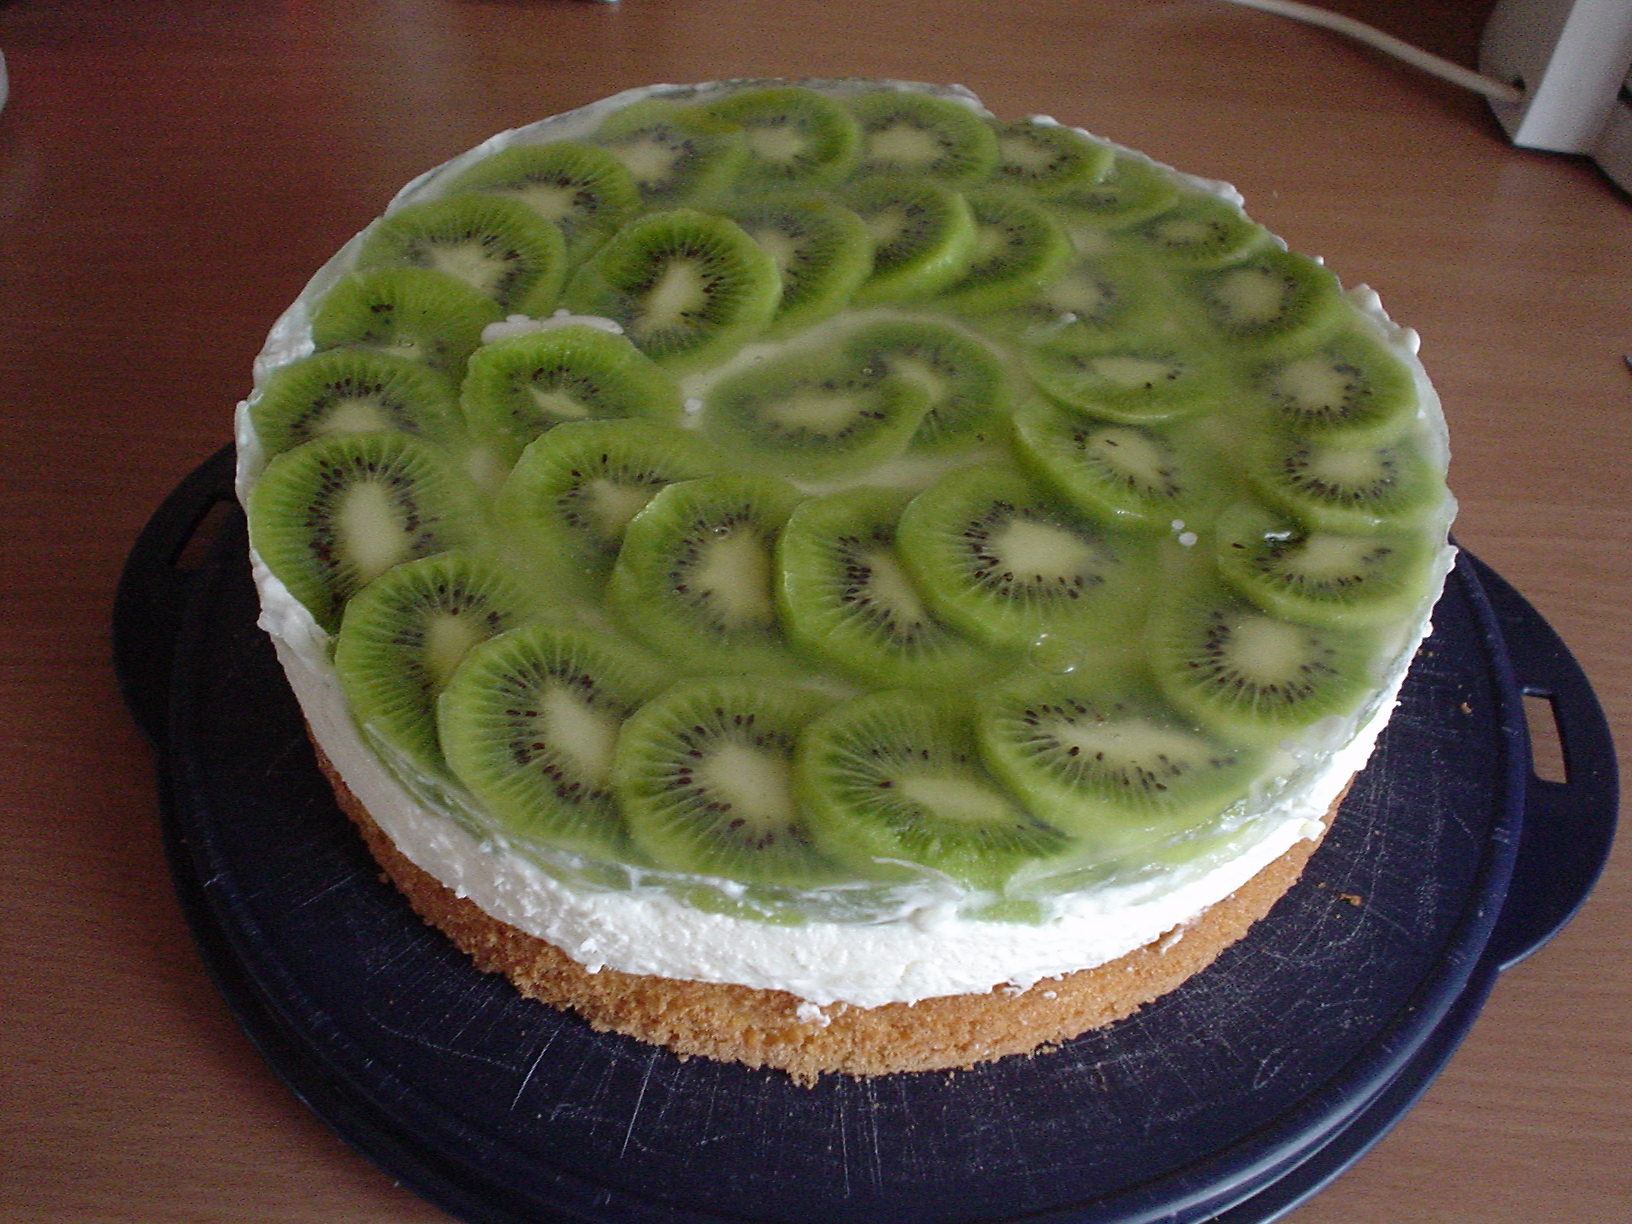 Habe gestern eine lecker Kiwi-Torte gebacken | Torten &amp; Kuchen Forum ...